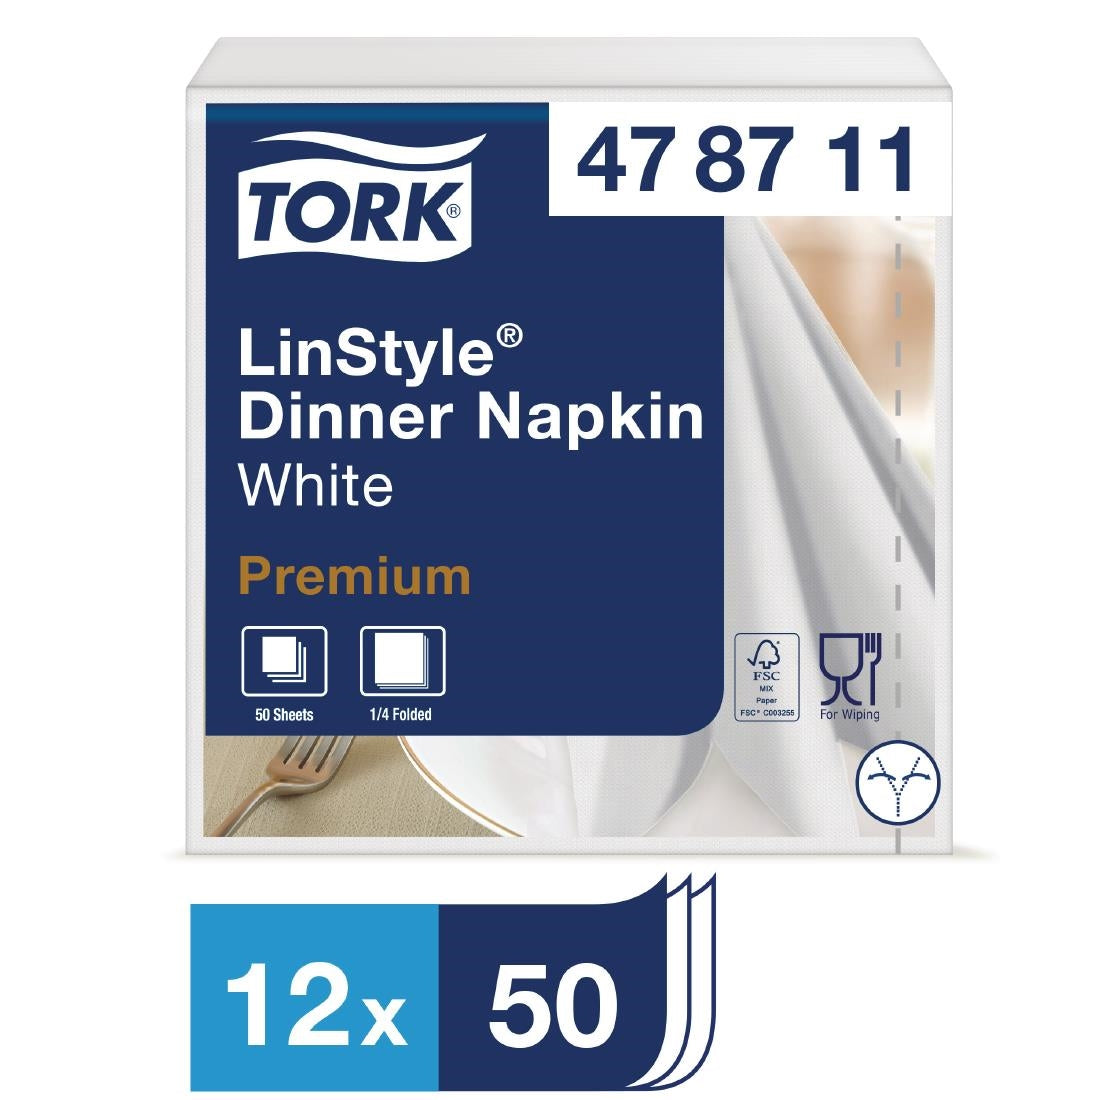 DP180 Tork Linstyle Dinner Napkin 400mm (Pack of 600)